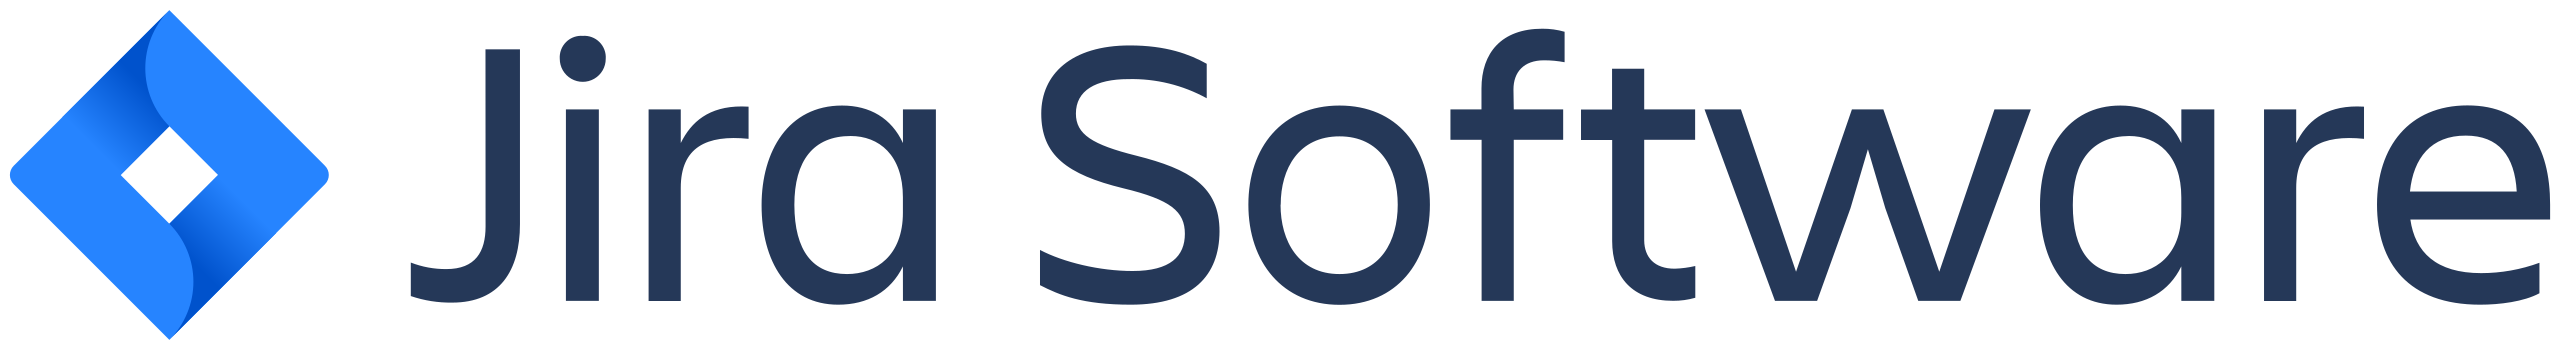 Jira Software logo